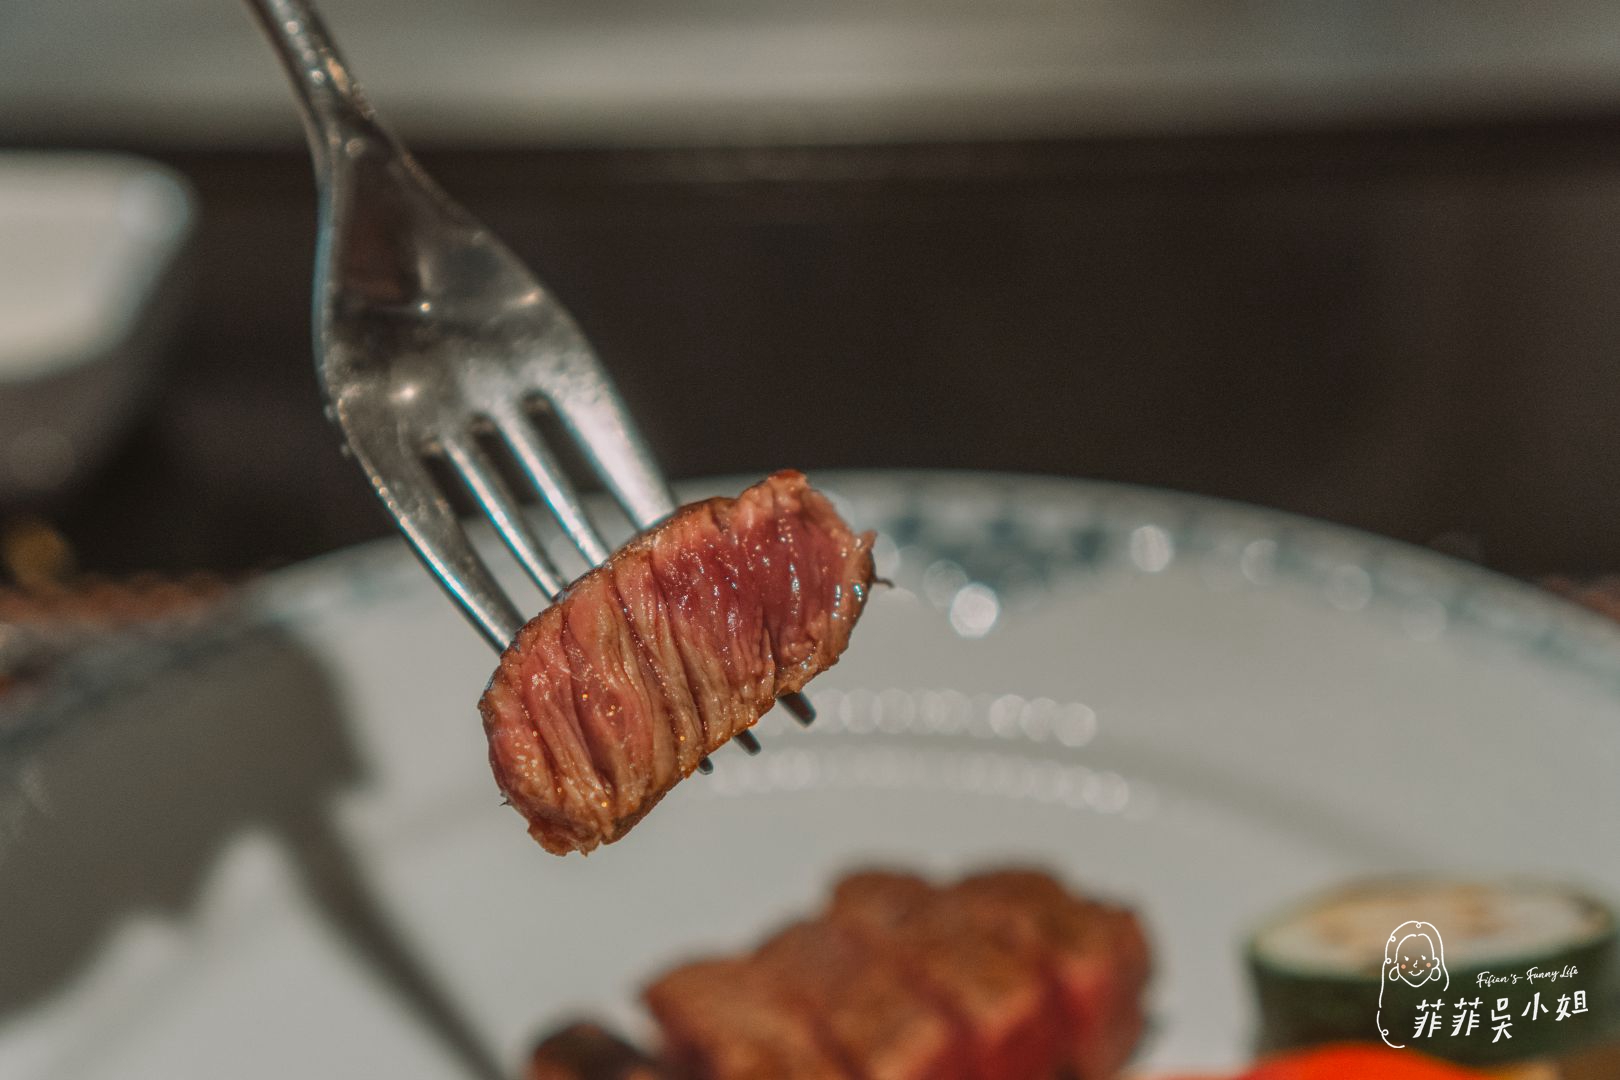 饗宴鐵板燒 宜蘭無菜單料理 現流漁獲與在地食材的互動式鐵板燒 完整菜單套餐分享 @菲菲吳小姐